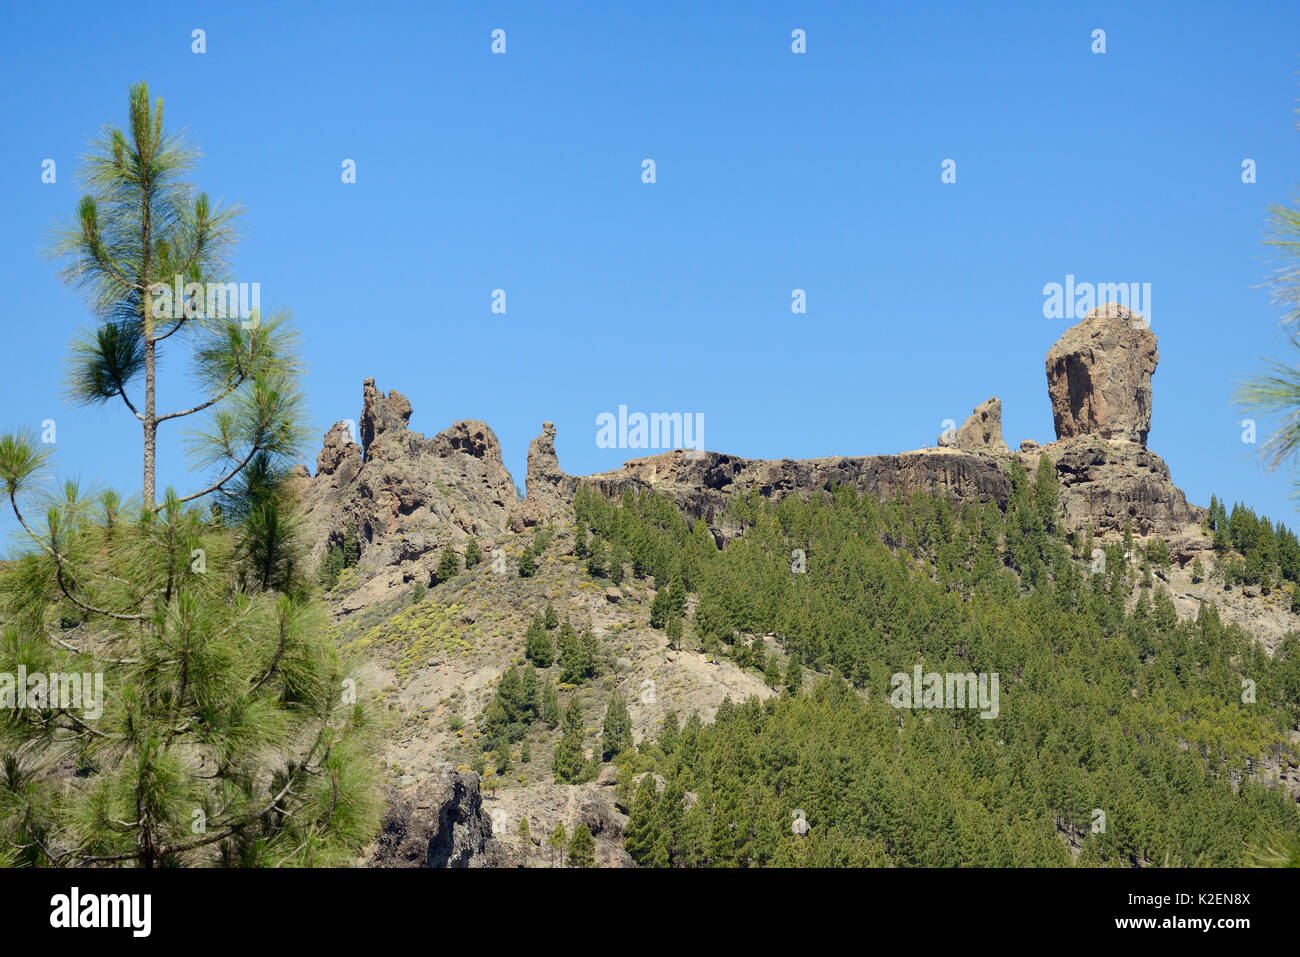 Roque Nublo et autres monolithes basaltiques volcaniques sur le plateau, au sein Tablon Nublo une réserve de biosphère de l'UNESCO, Gran Canaria, flanqué d'Île des pins (Pinus canariensis), près de Tejeda, mai 2016. Banque D'Images